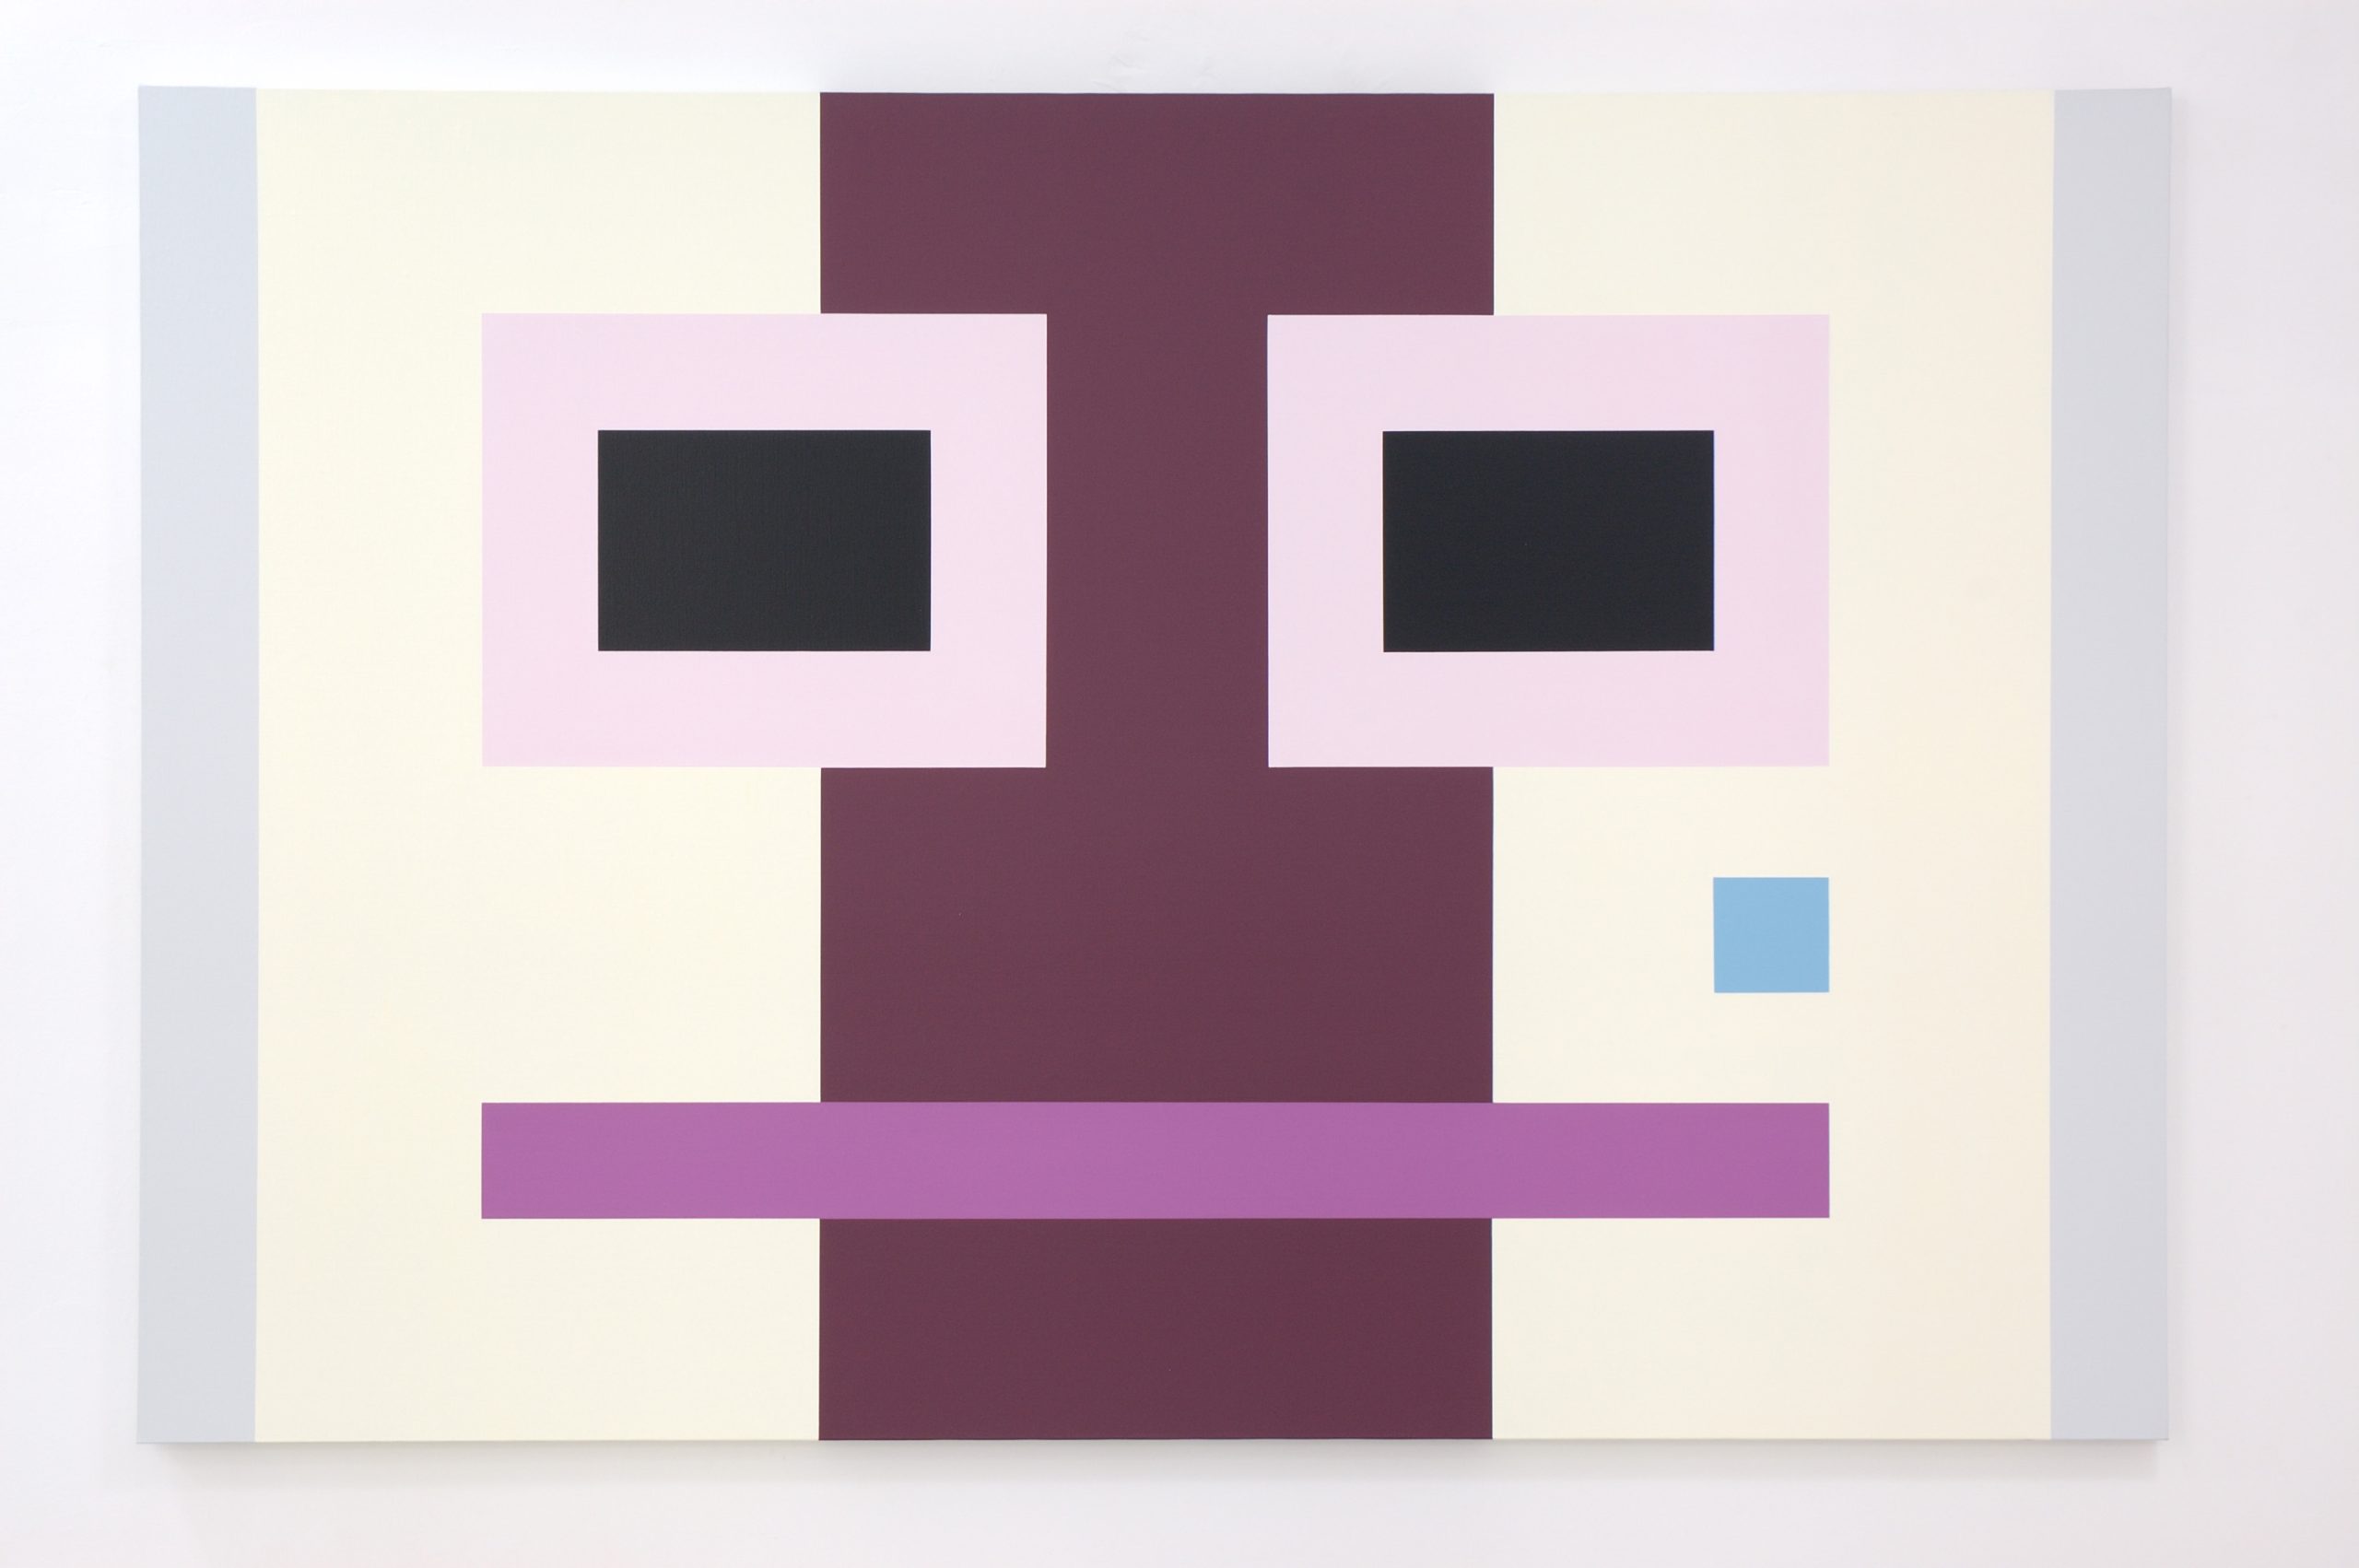 Imre BAK: Trendi, 2006, acrylic on canvas, 140 x 210 cm